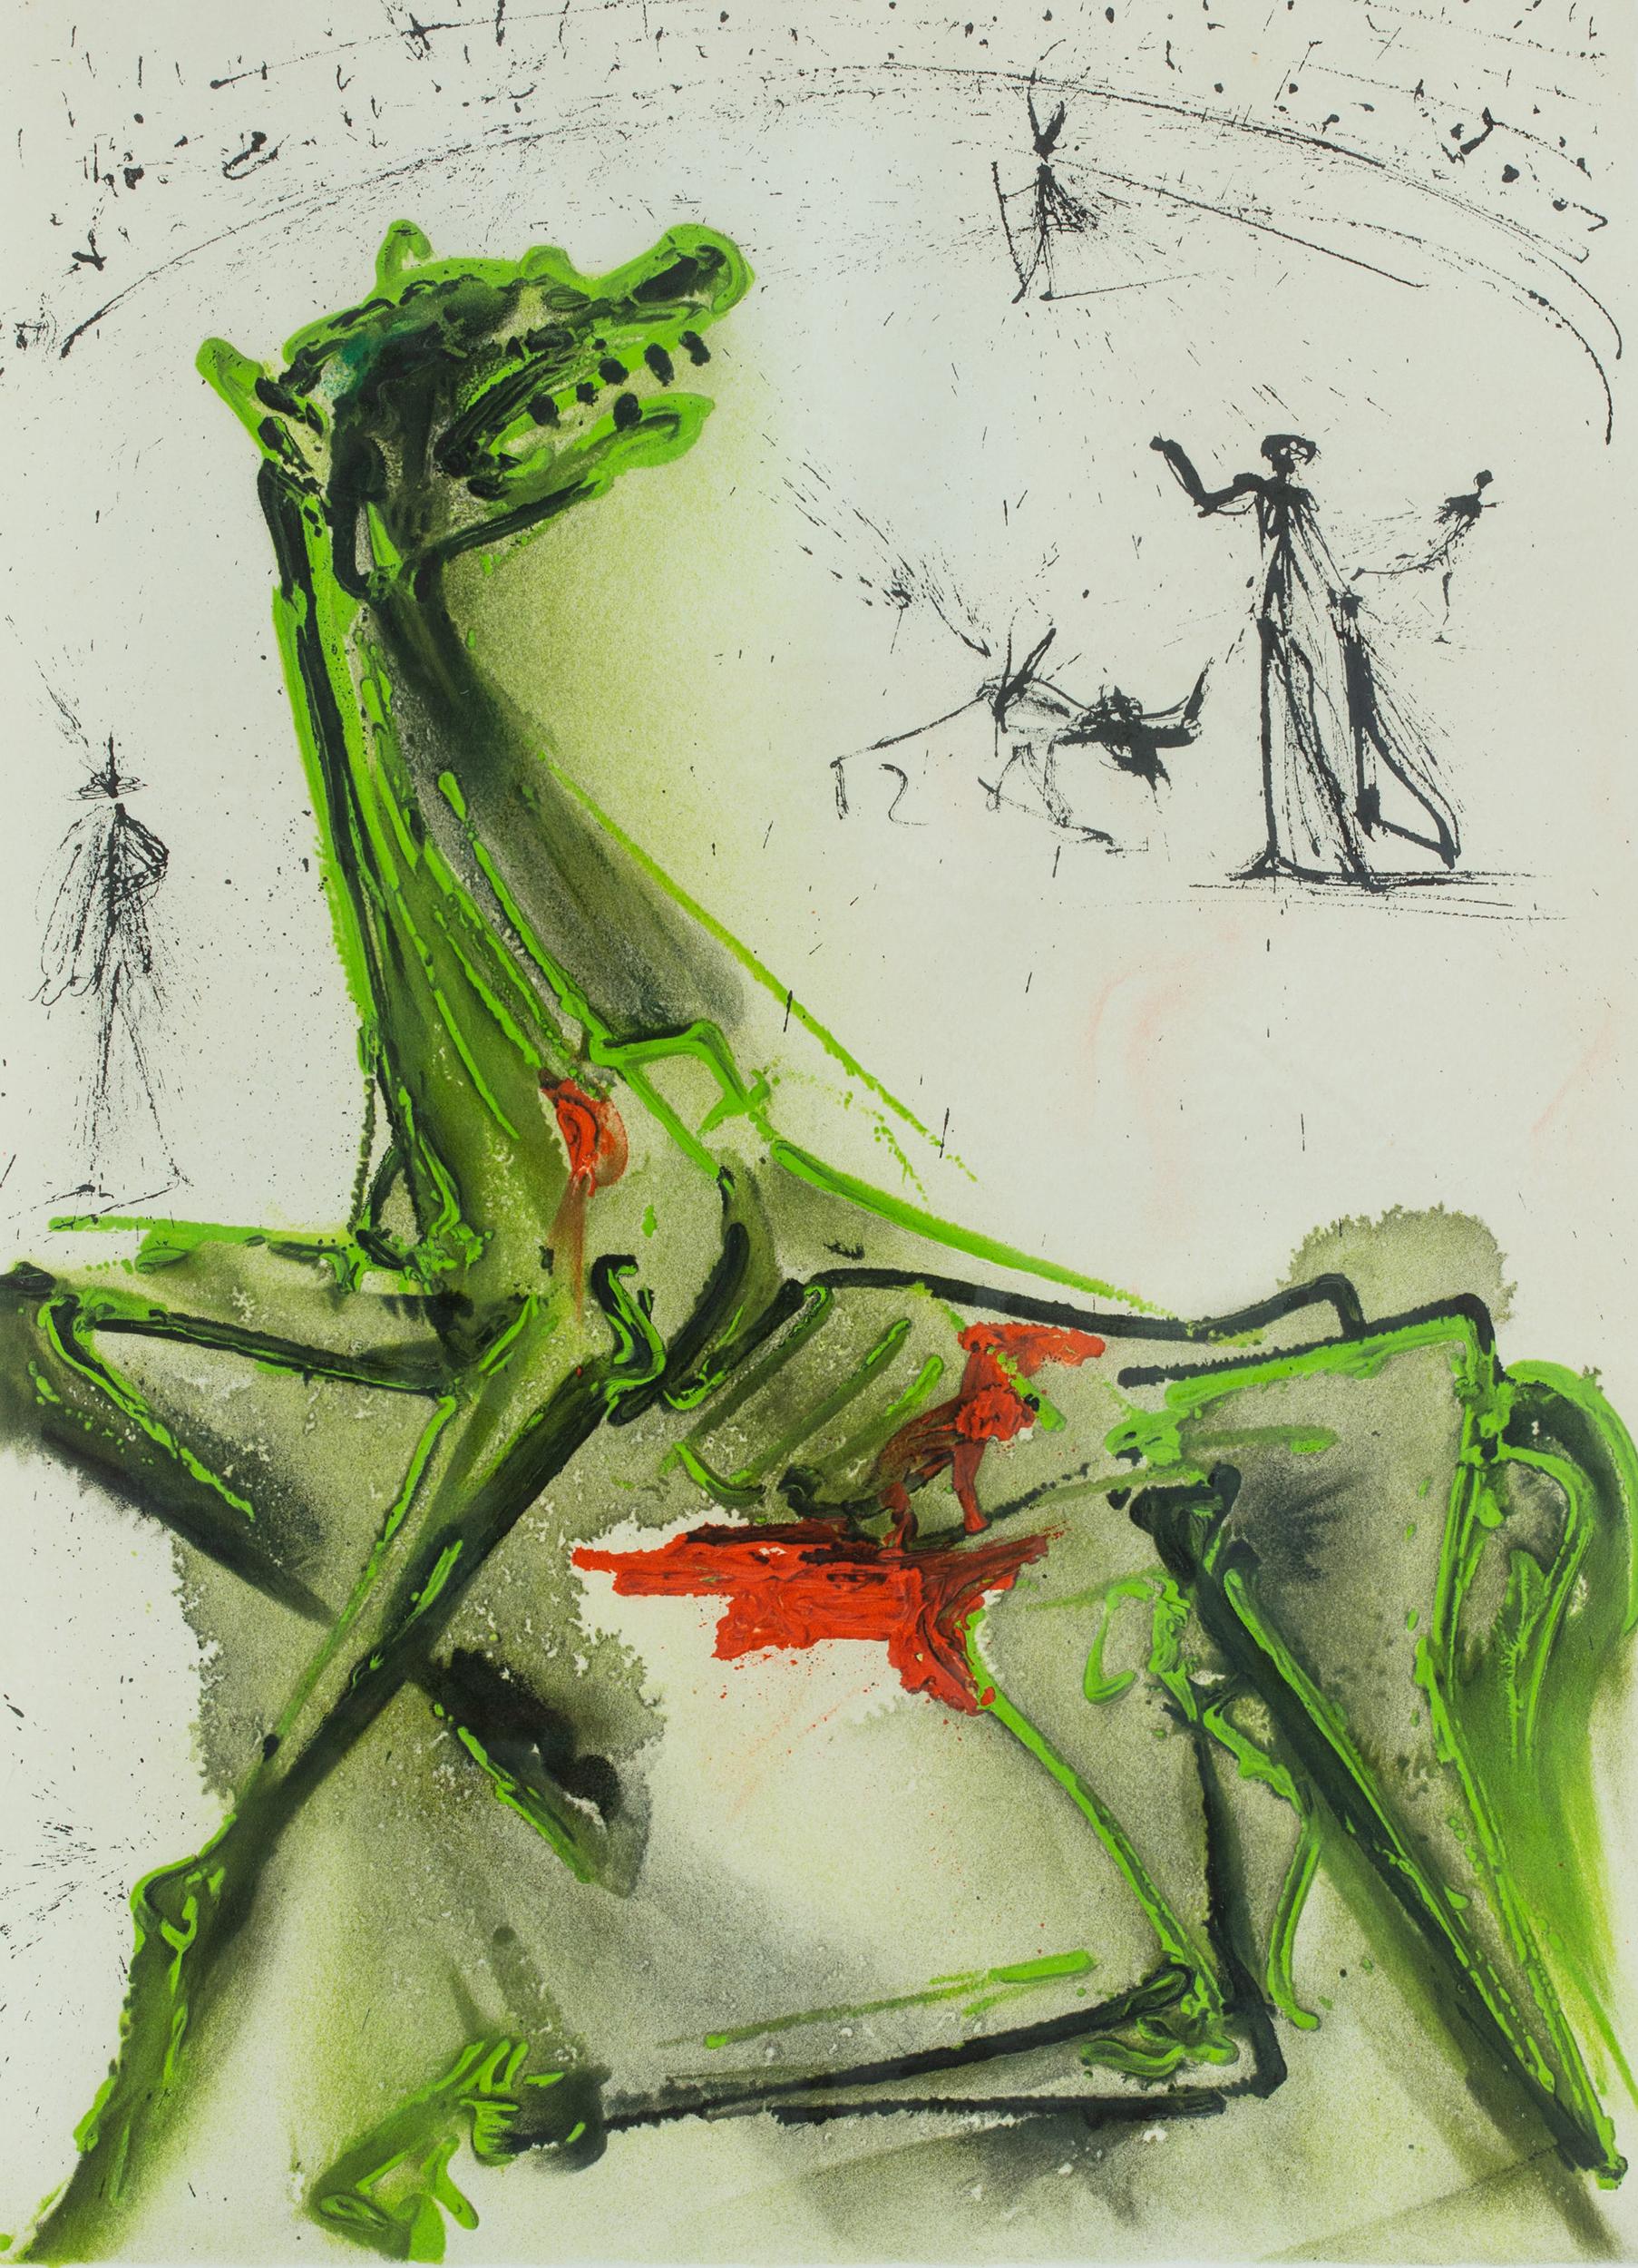 La Victime de la Fete (The Victim of the Festivity) - Print by Salvador Dalí